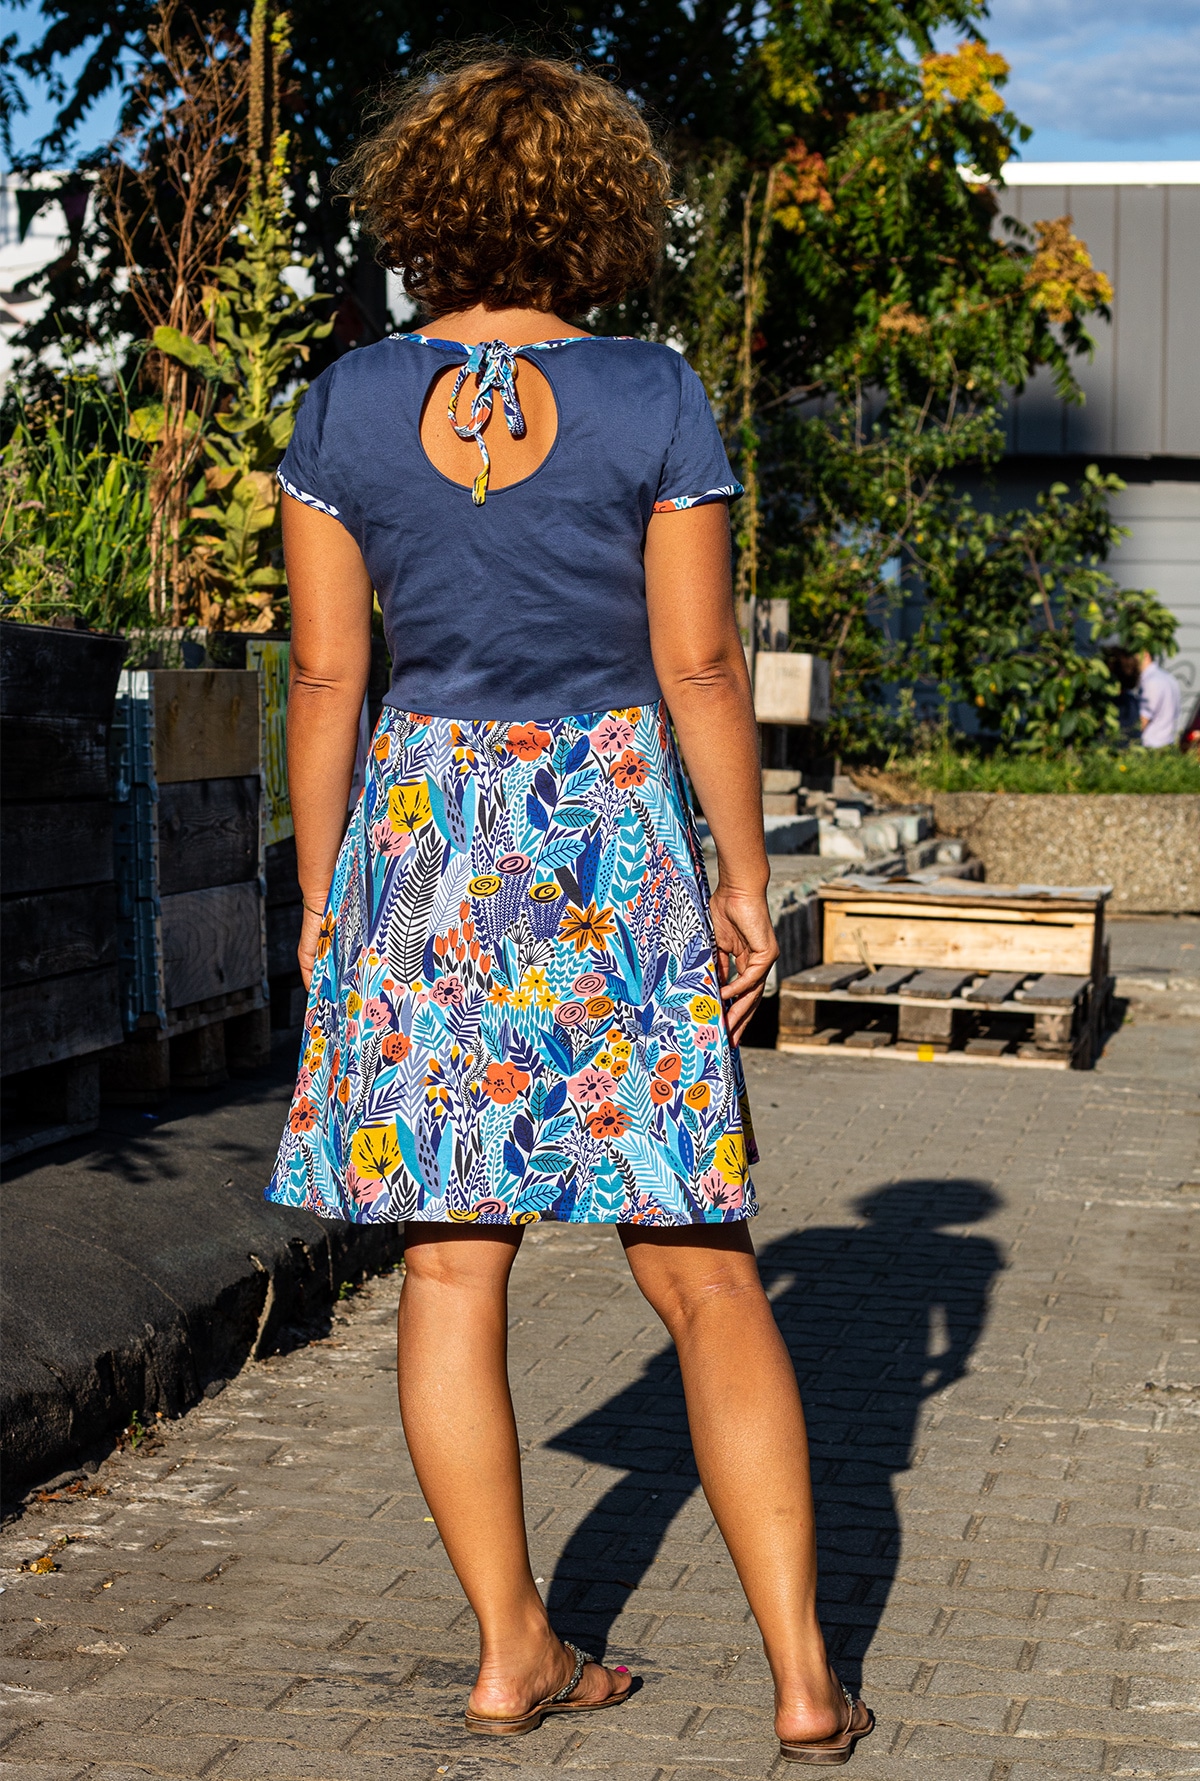 Rückenansicht - selbstgenähtes Sommerkleid von Piexsu in Blau mit buntem Muster auf Rock